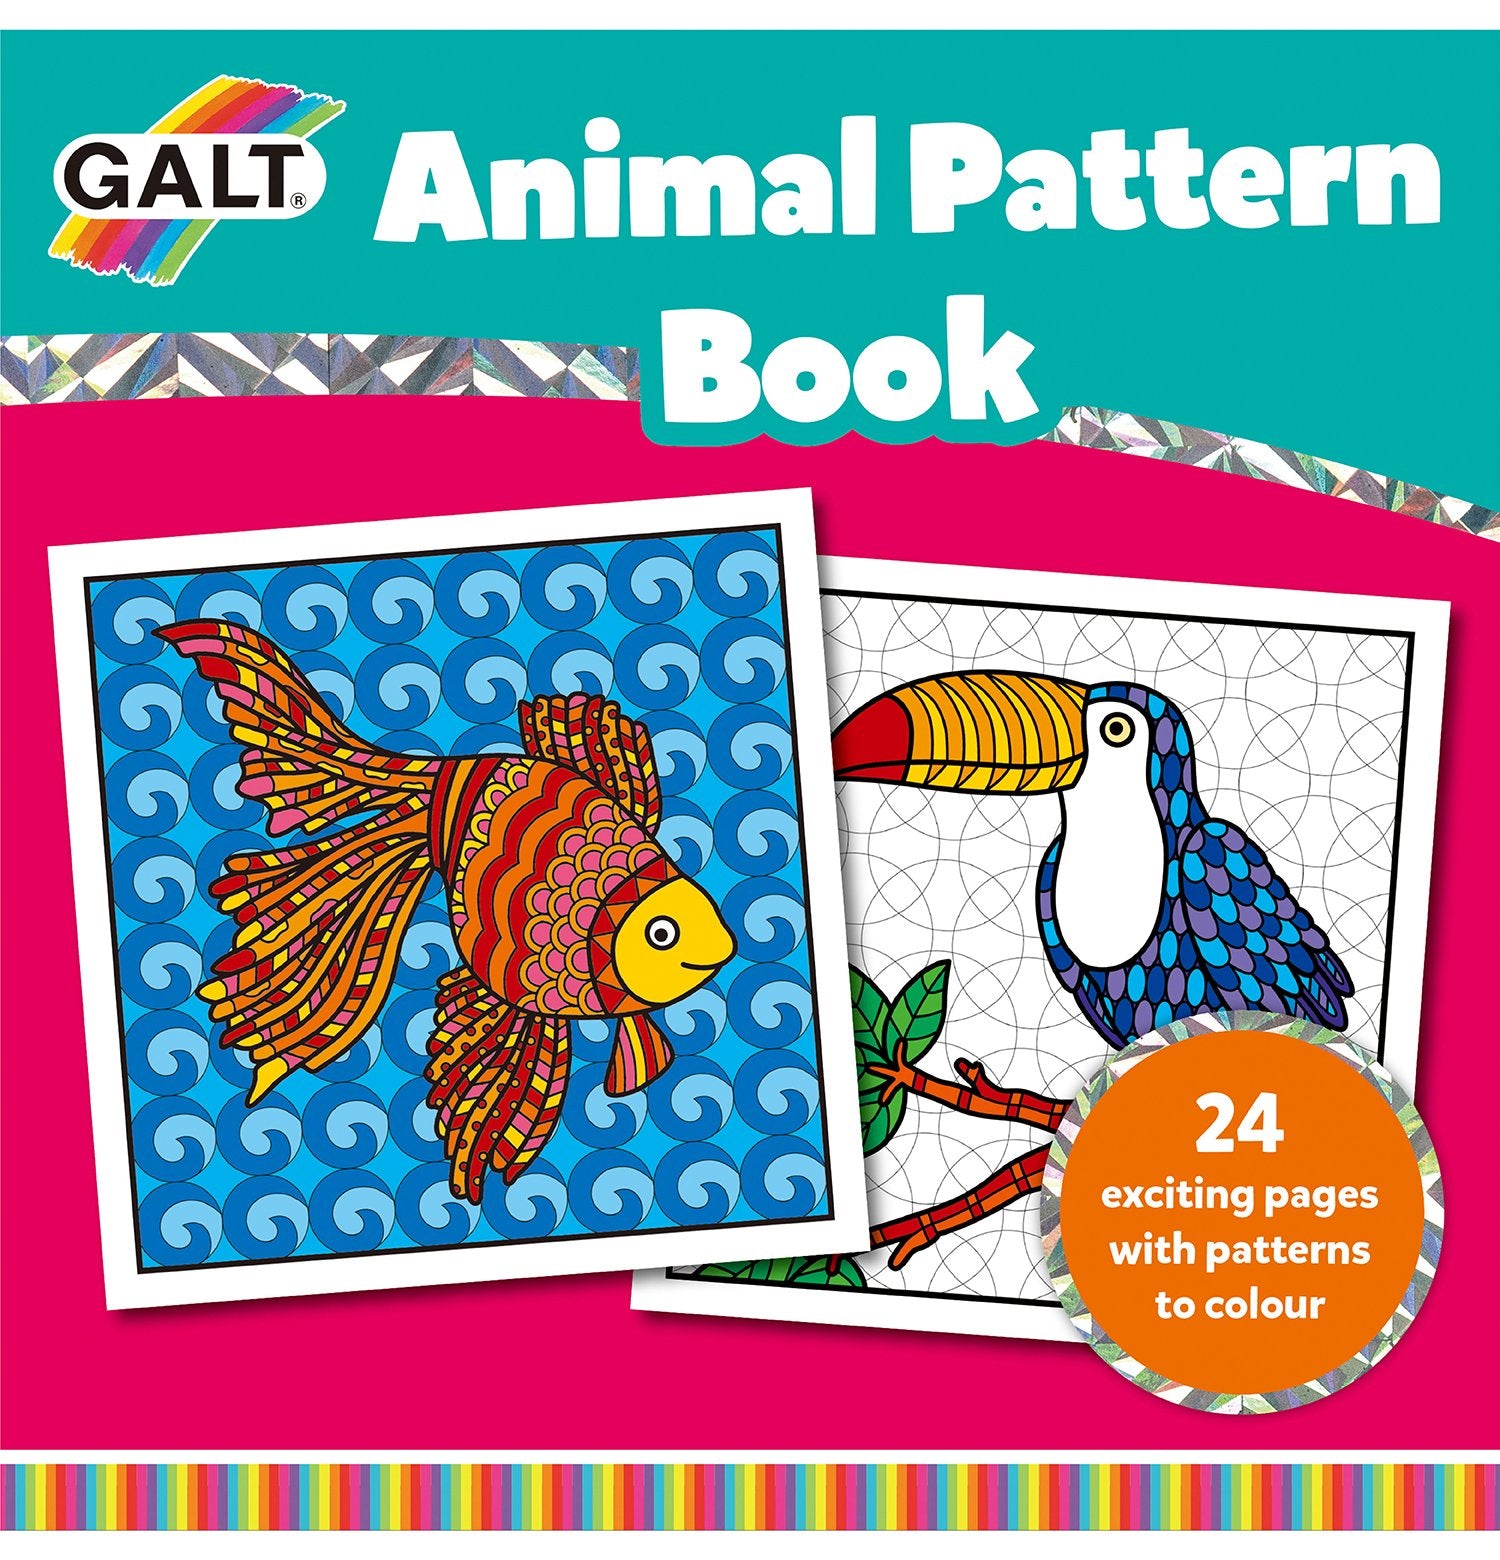 Animal Pattern Book - Galt